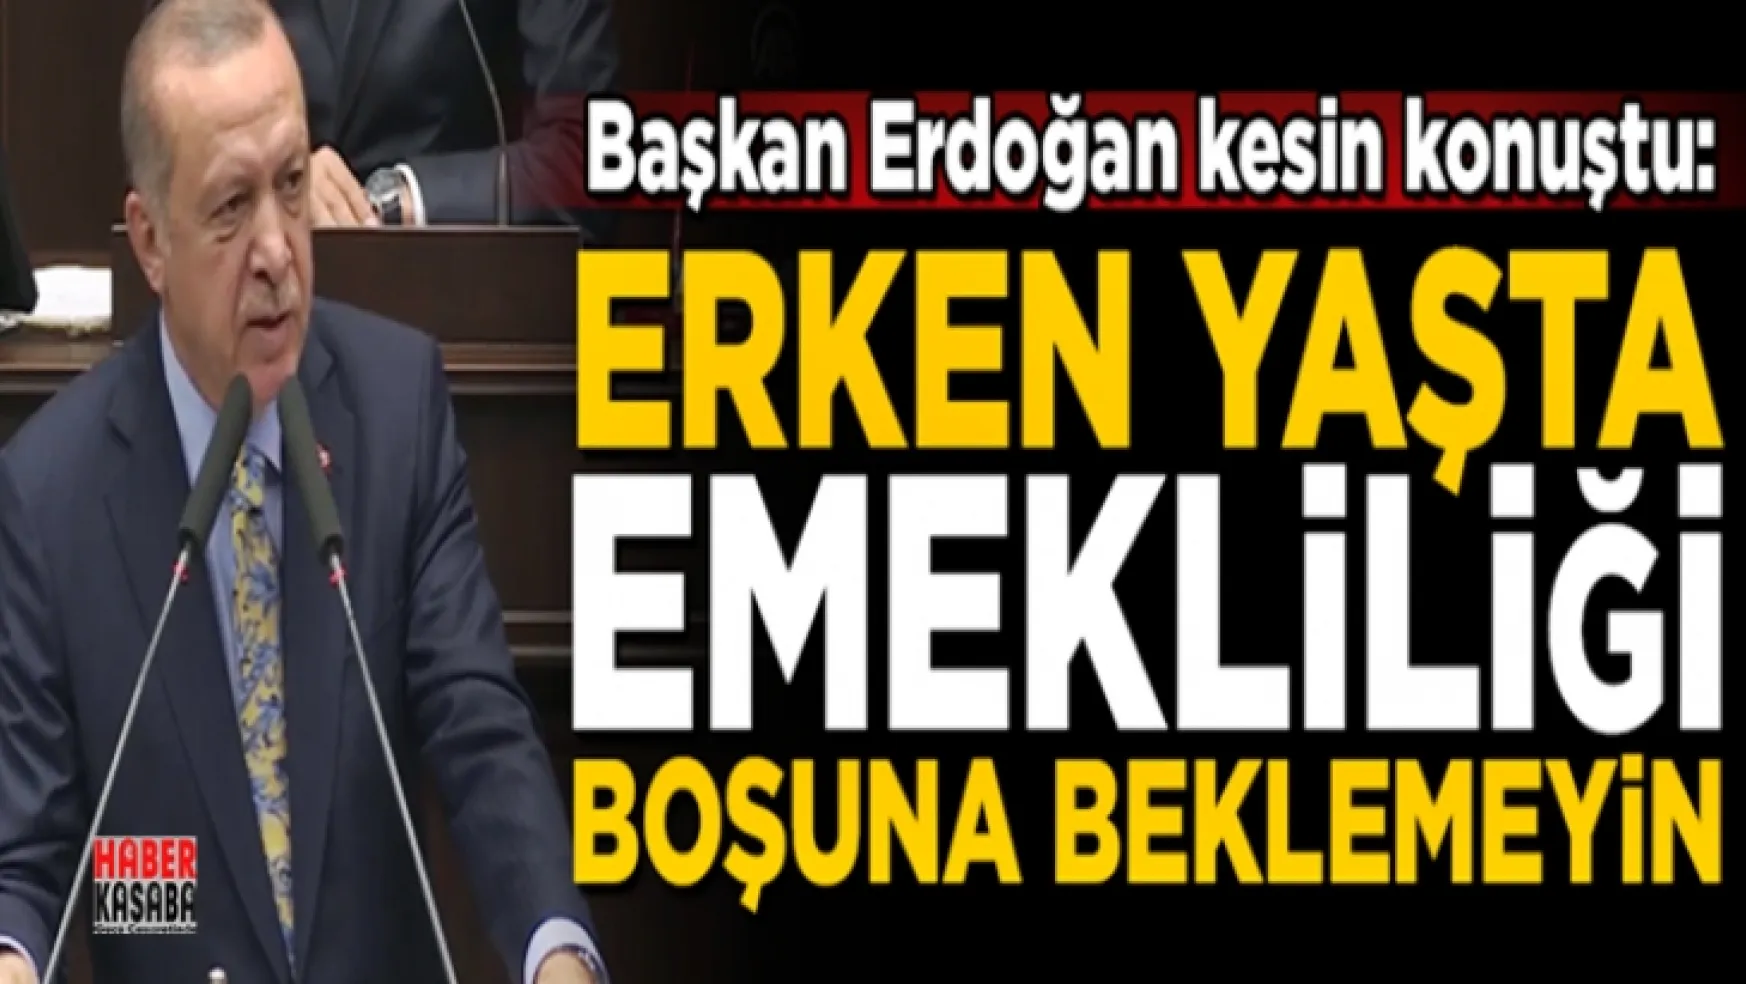 Başkan Erdoğan'dan erken emeklilik hakkında net konuştu